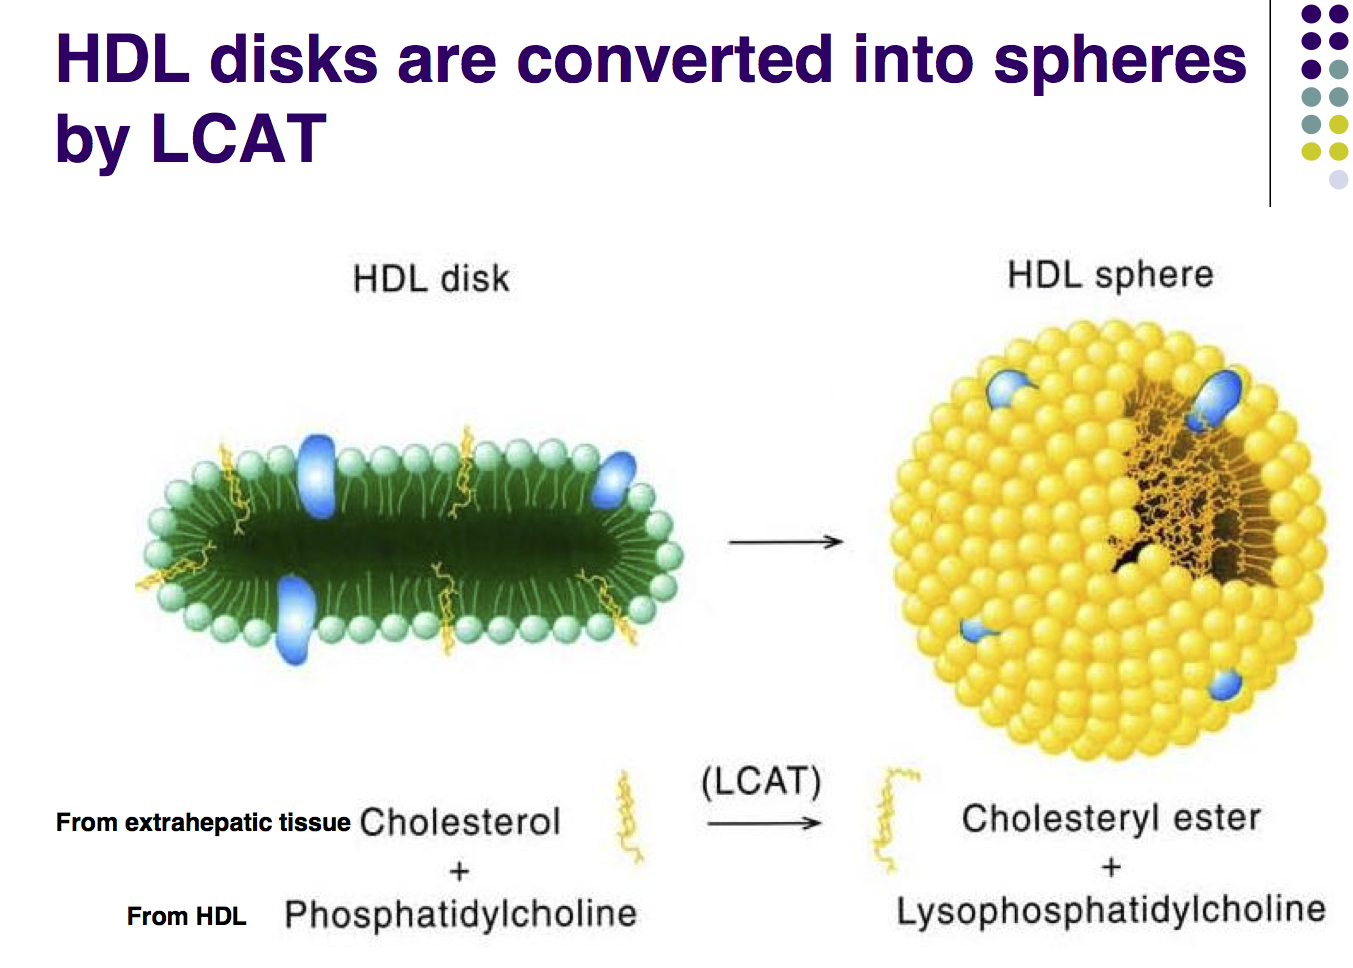 HDLのコレステロール引き抜き作用におけるLCATの働きの図示